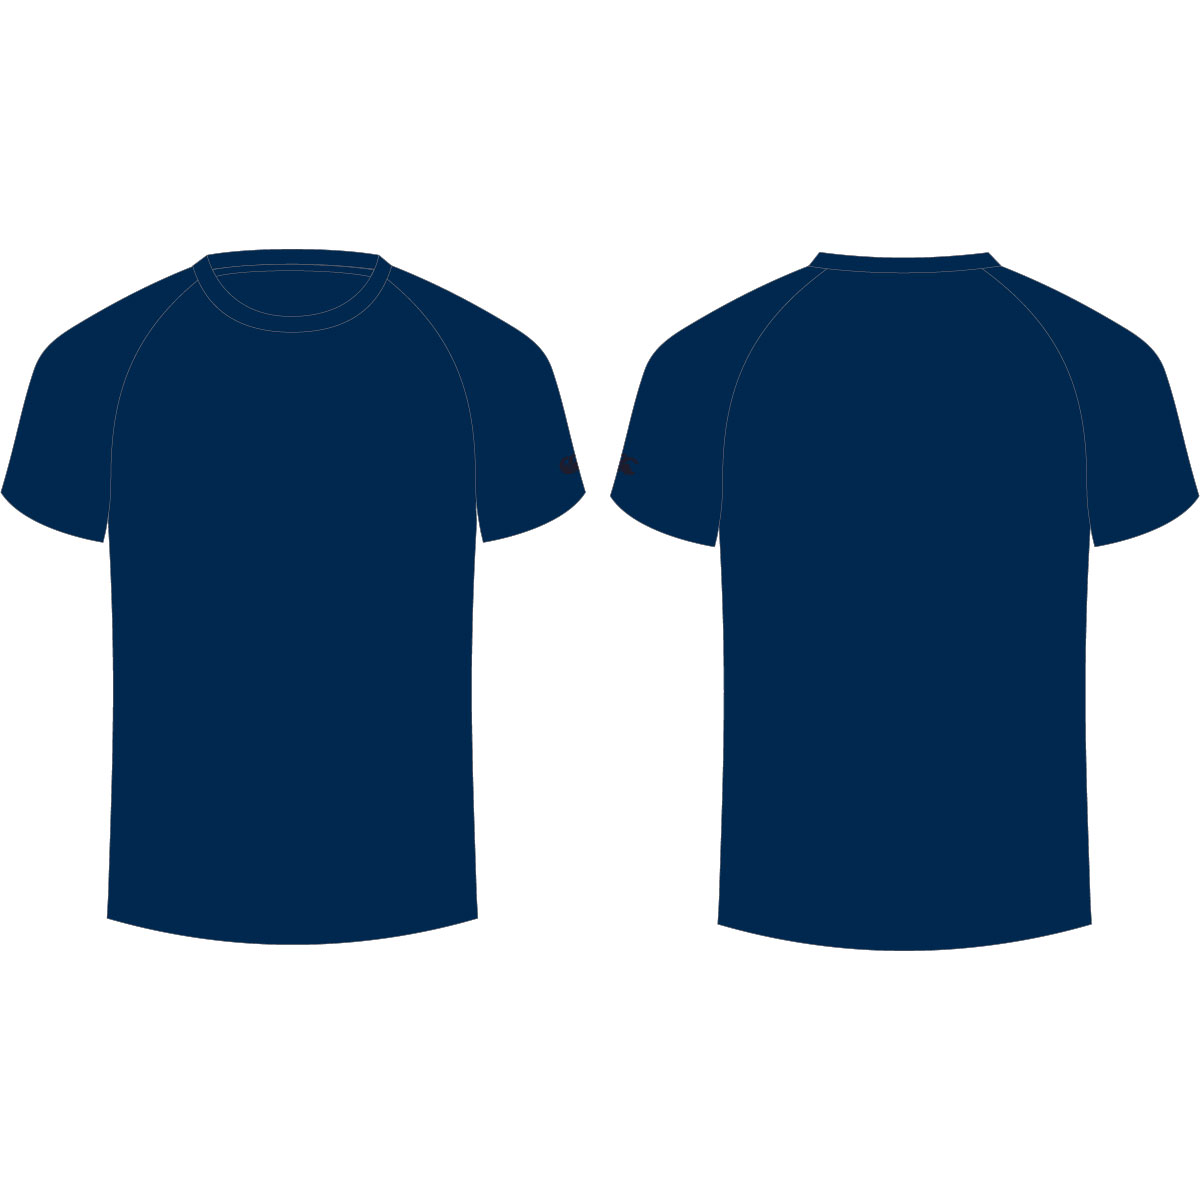 navy blue shirt clipart - Clip Art Library